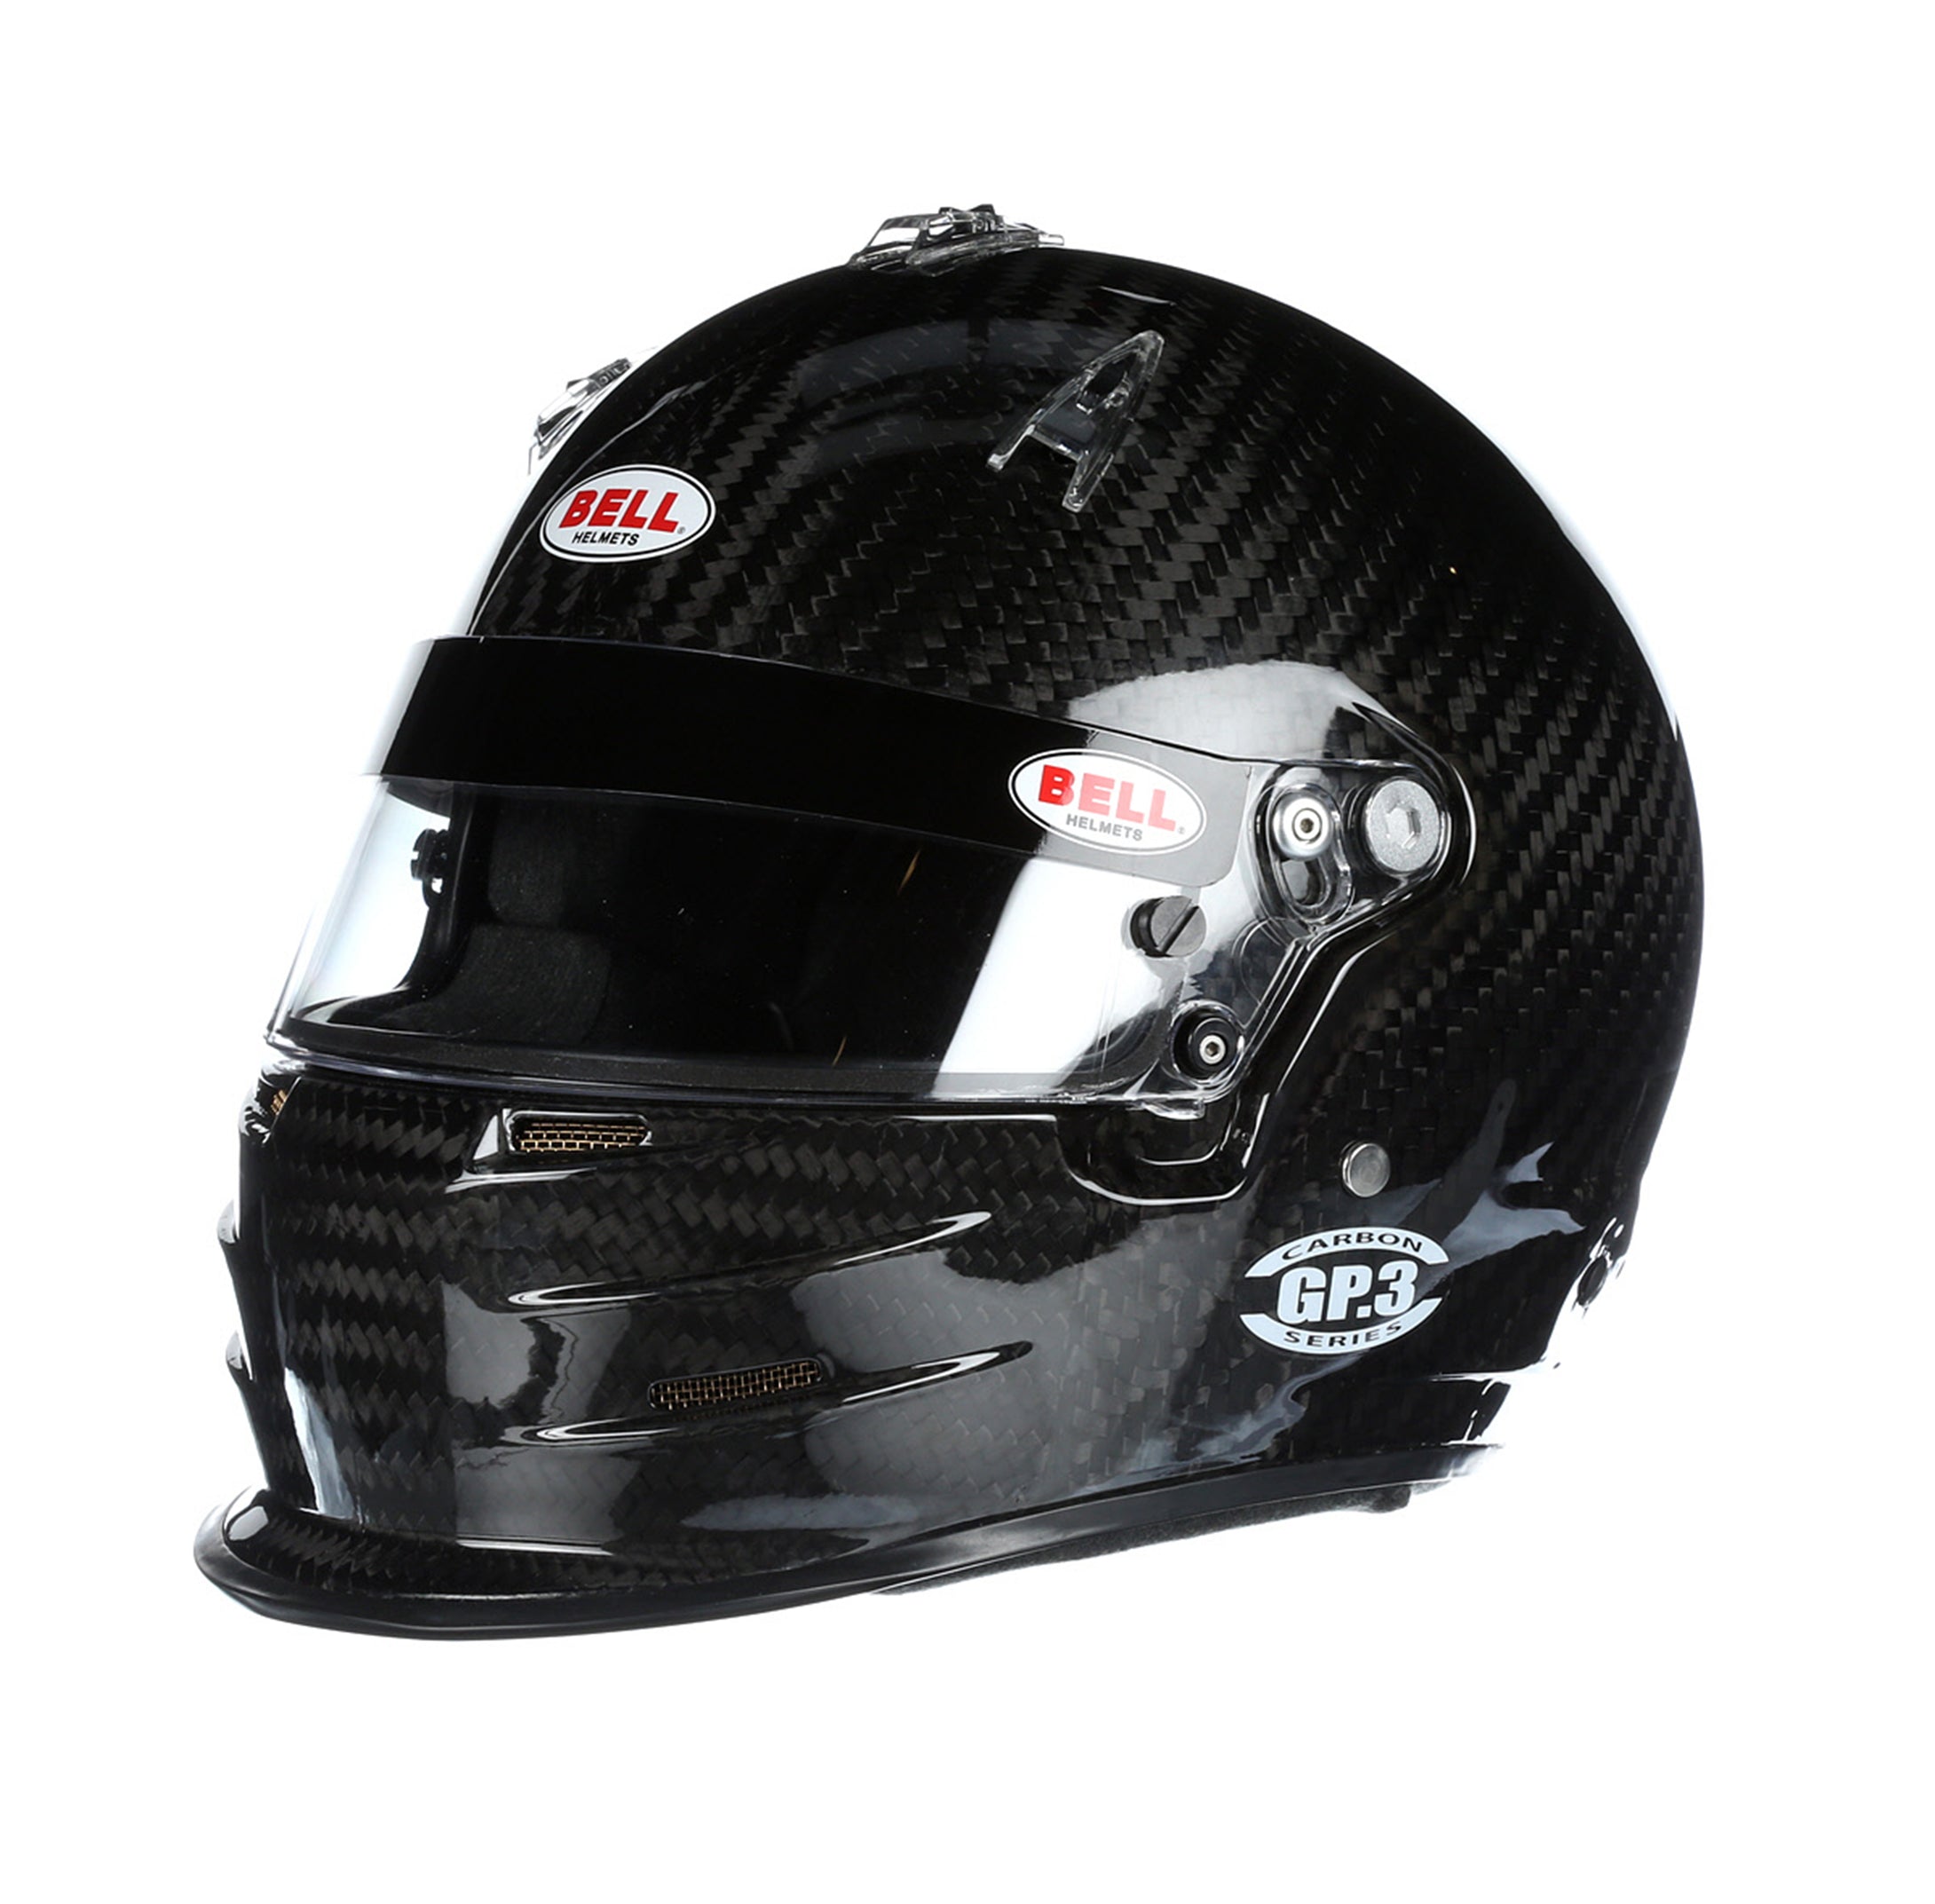 Bell SA2020 GP3 Carbon Helmet - FIA8859/SA2020 (HANS)